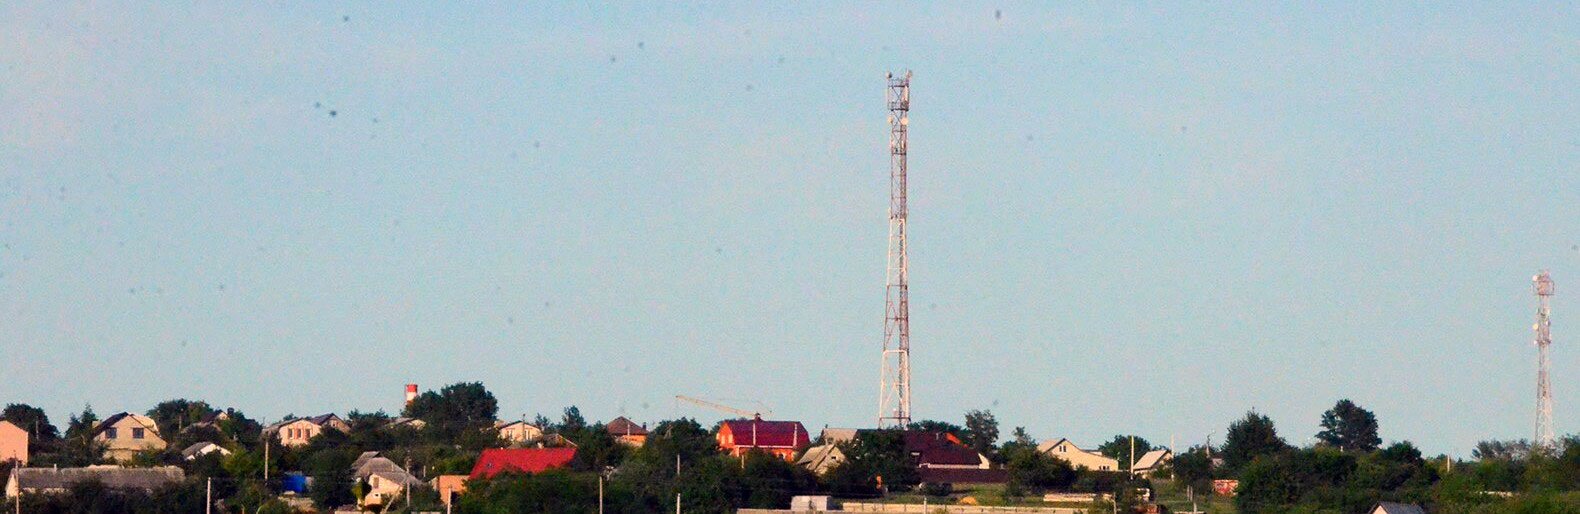 В новом году сотовая связь и мобильный интернет появится в 39 отдалённых деревнях и сёлах Белгородской области